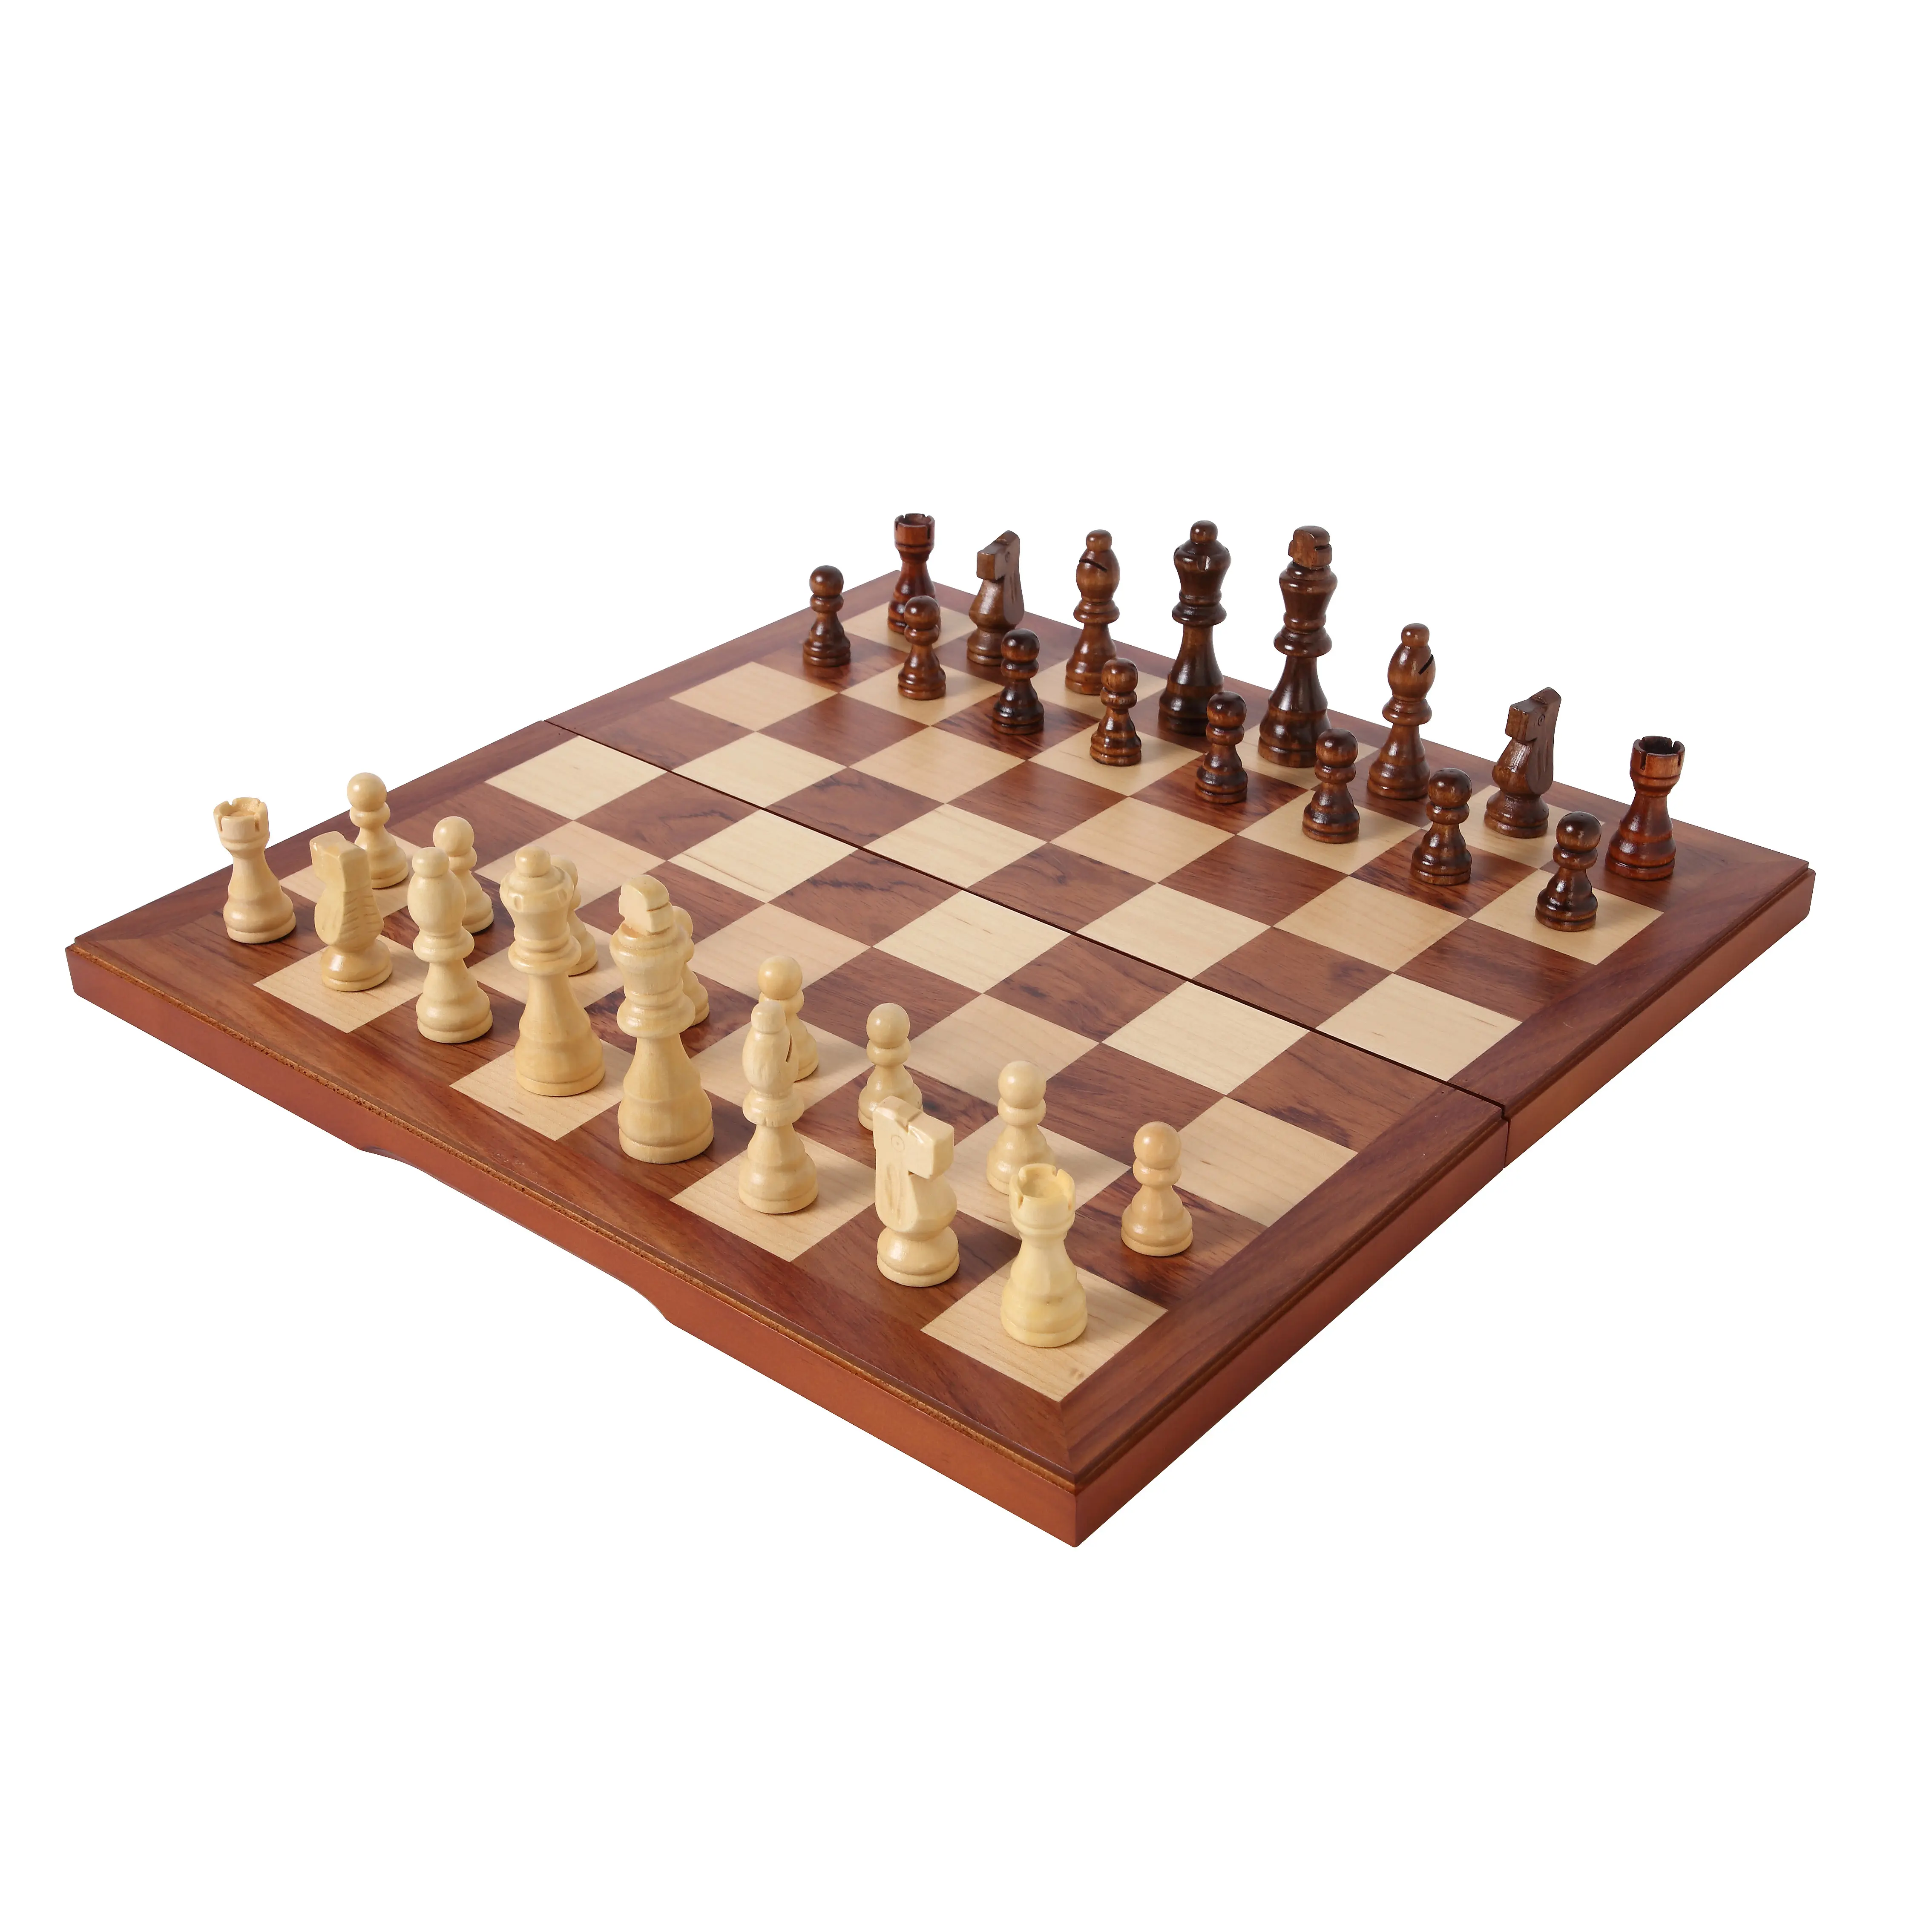 Jouets en bois, jeux d'échecs et de cartes, costume intérieur et extérieur voyage costume d'échecs pliable portable